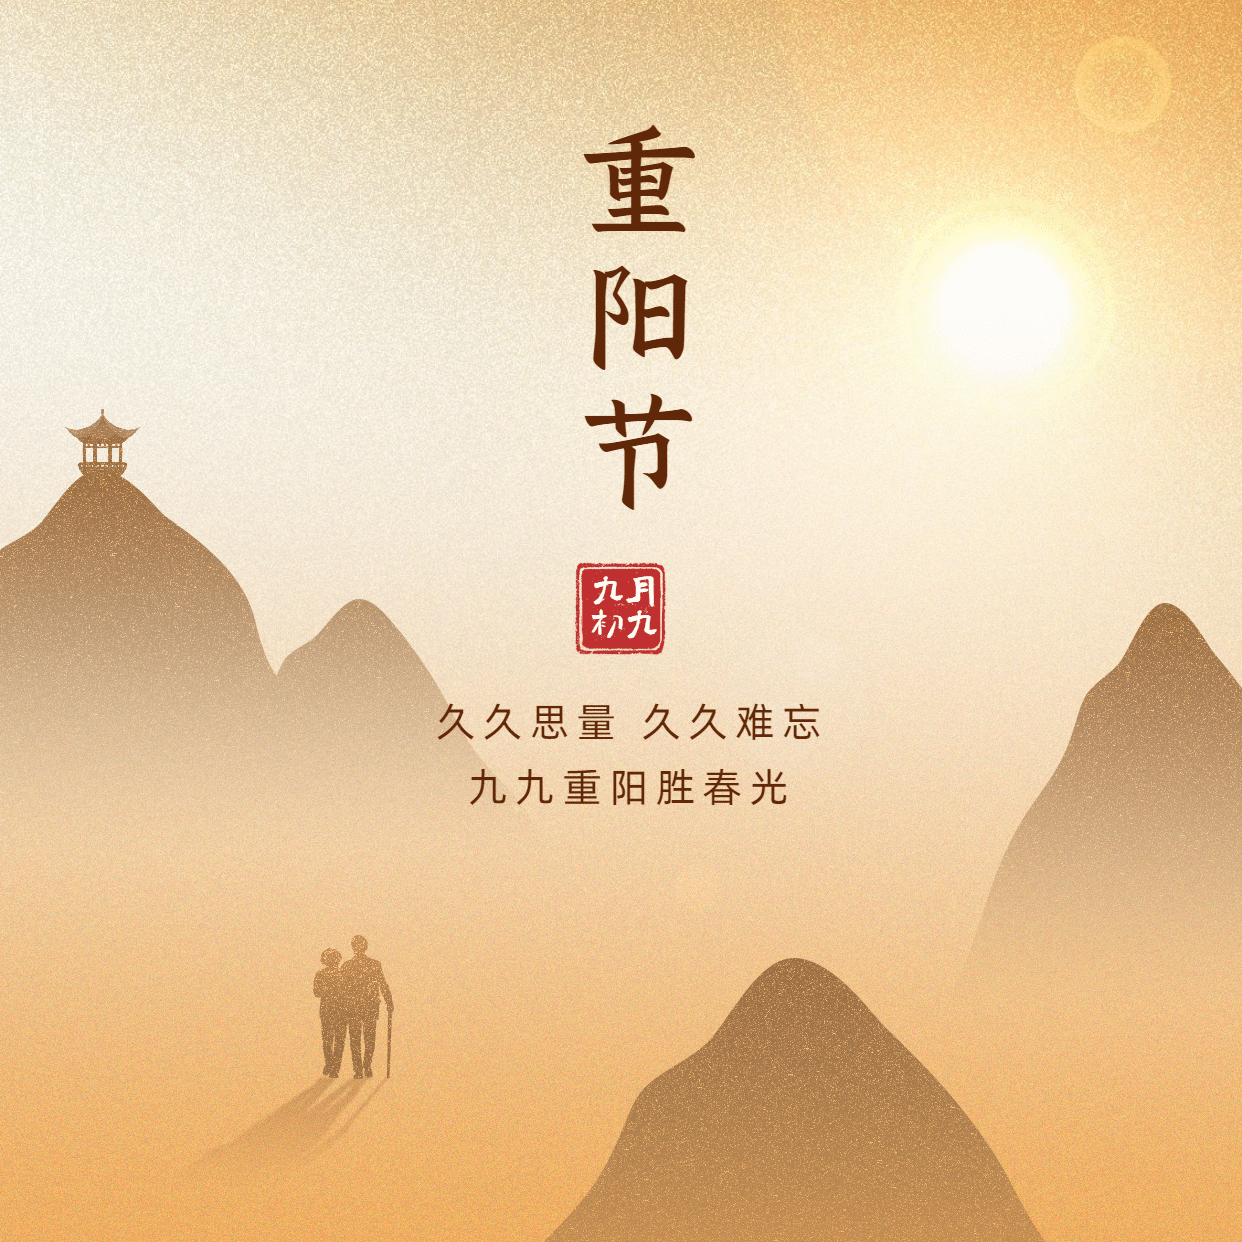 九九重阳节祝福远山人物剪影中国风方形海报